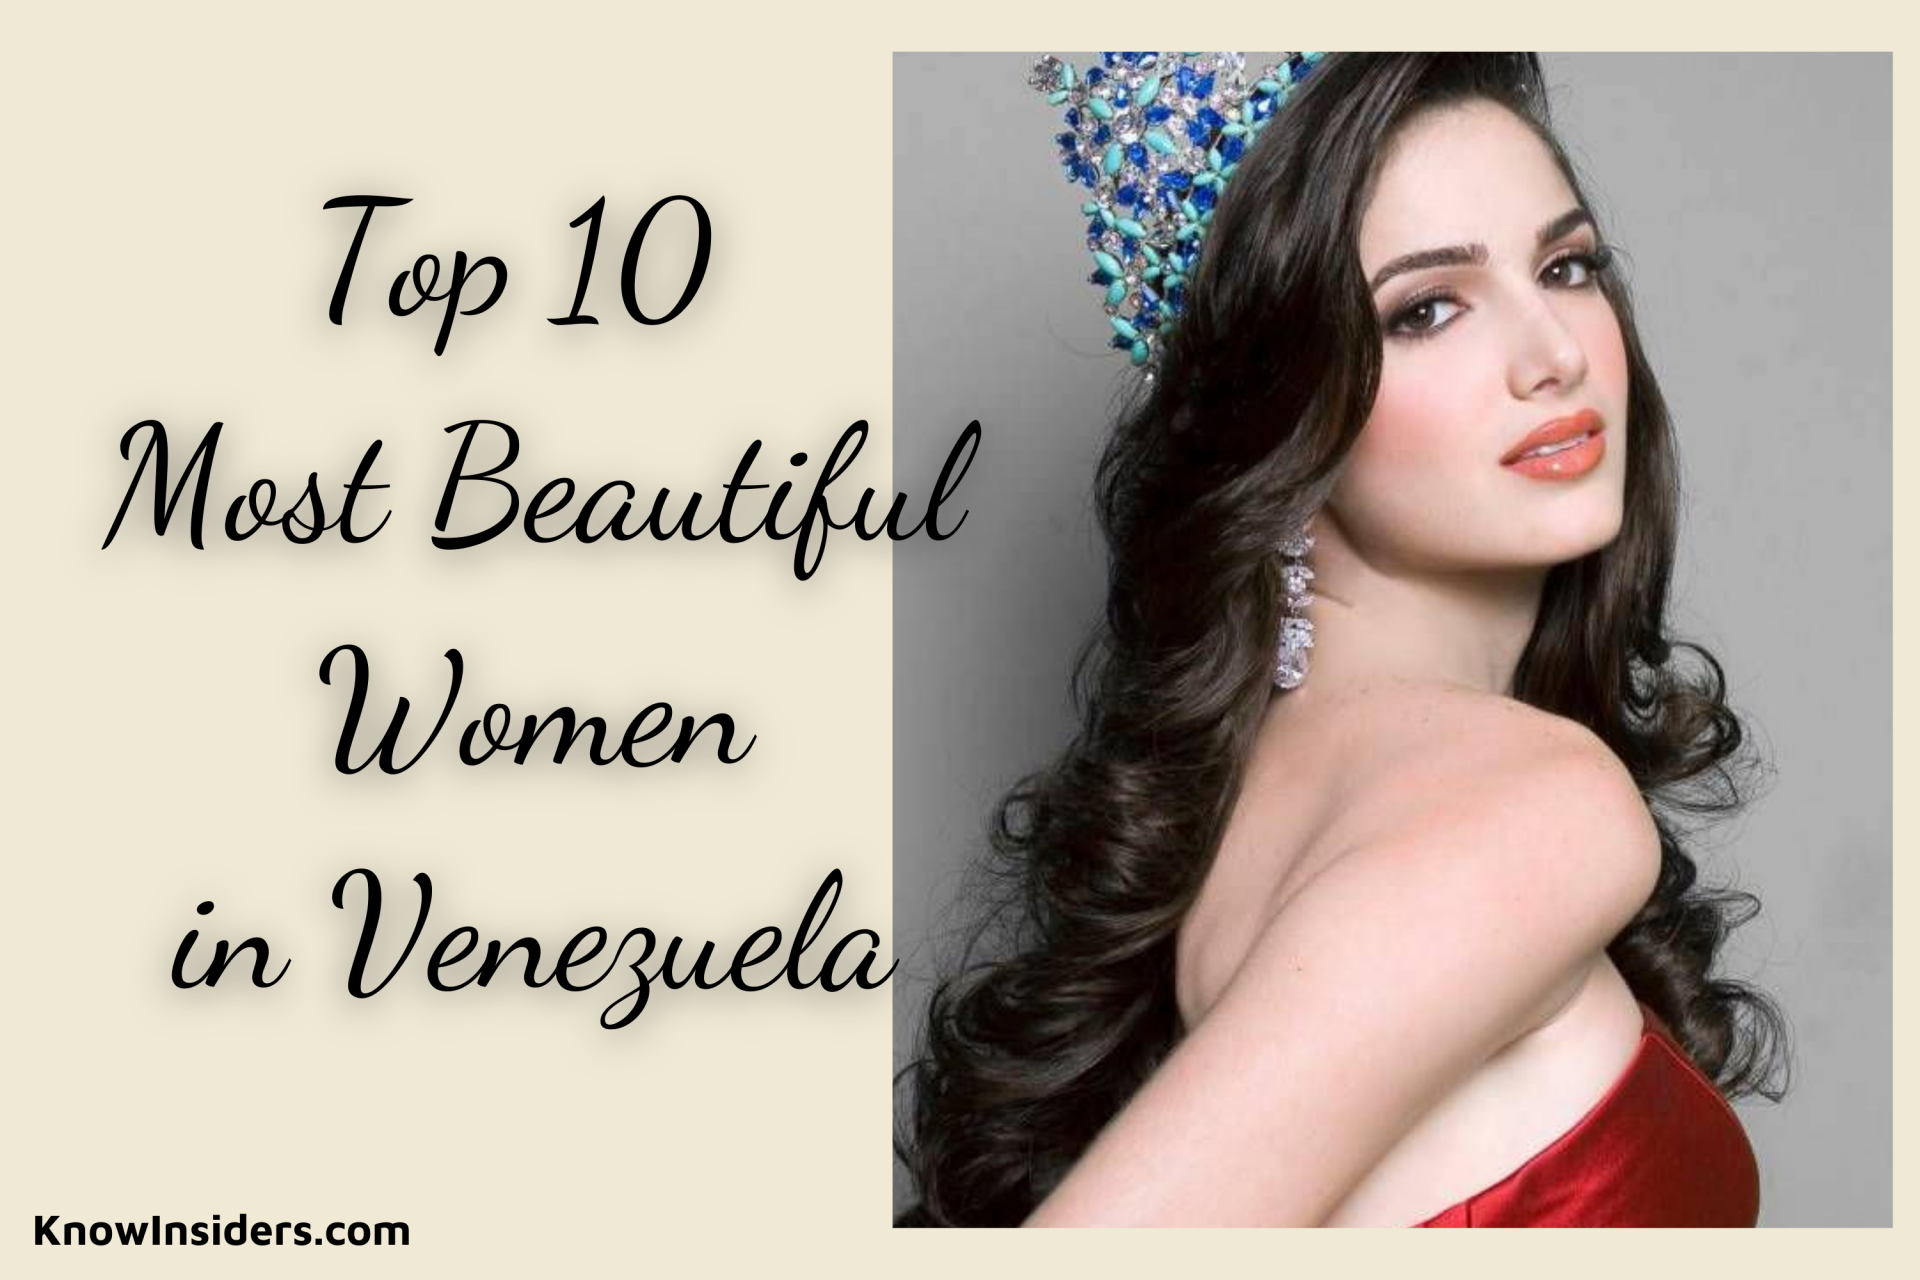 Top 10 Most Beautiful Women in Venezuela - Updated